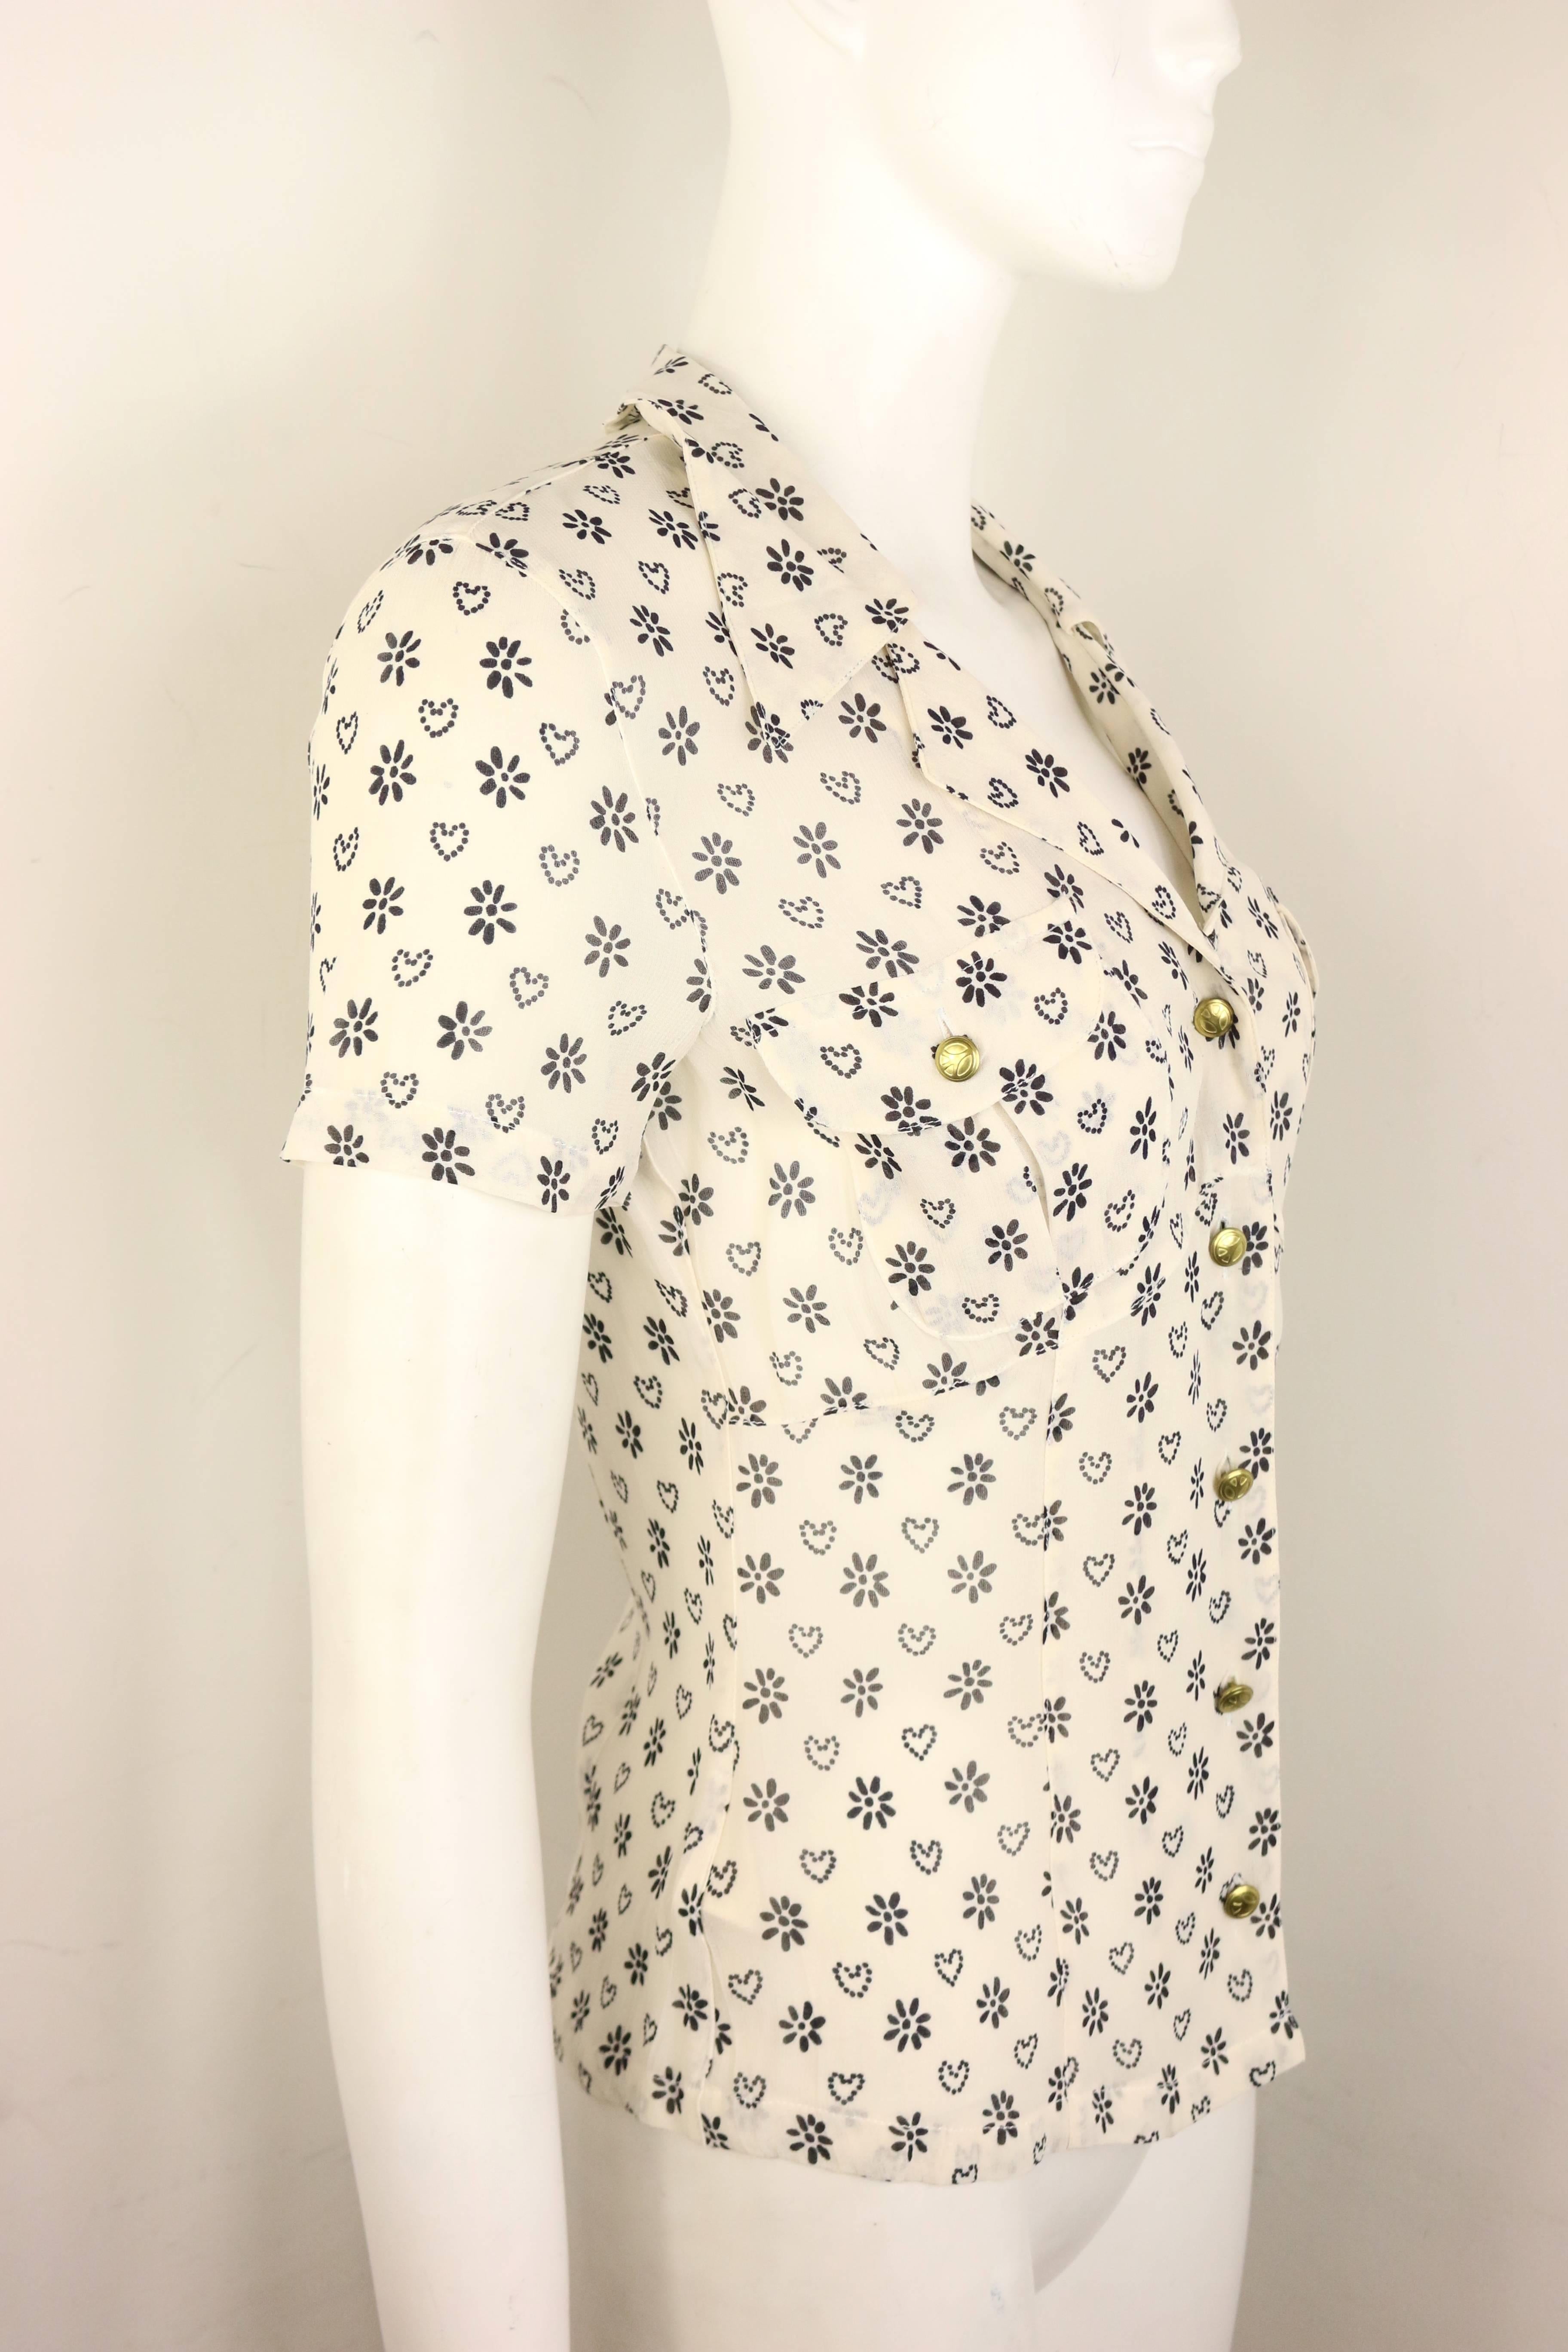 - Vintage 90s Moschino Jeans weißes Hemd mit kurzen Ärmeln und Kragen. 

- Mit schwarzem Sonnenblumen- und Herz-Print, goldfarbenen 